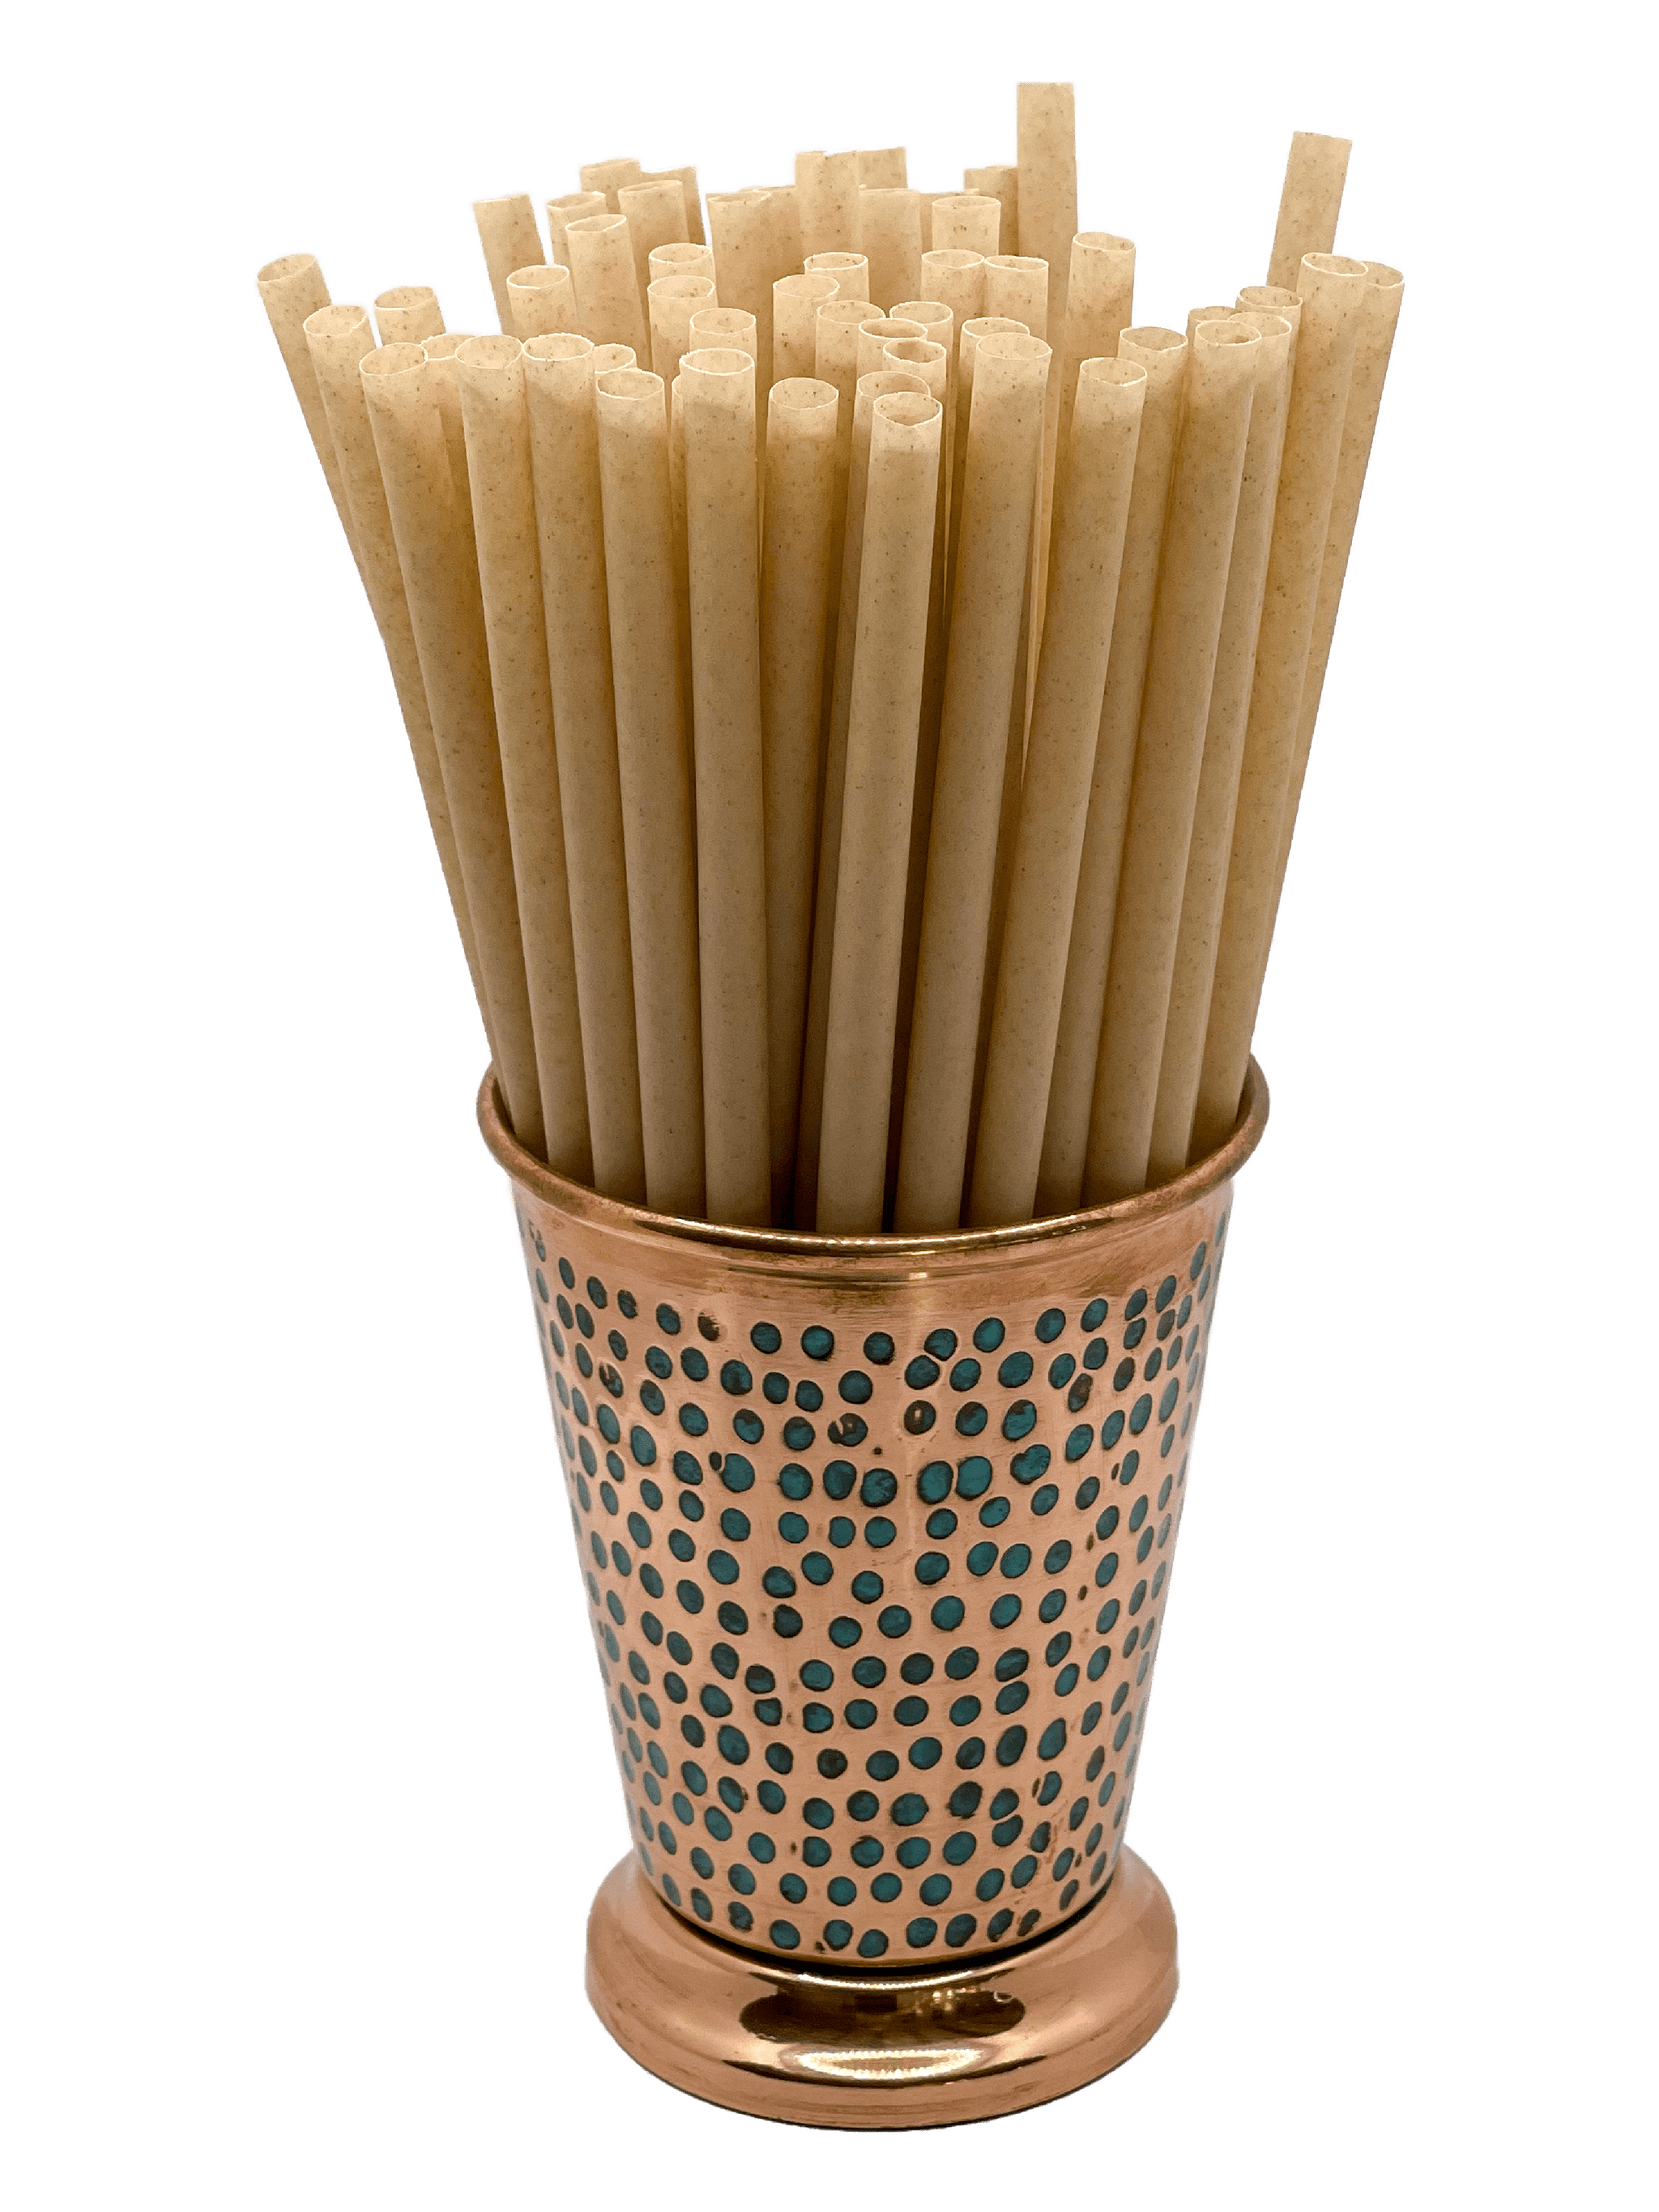 La Kana Paille la paille en canne à sucre (la plus naturelle) - Kreyol  Pailles